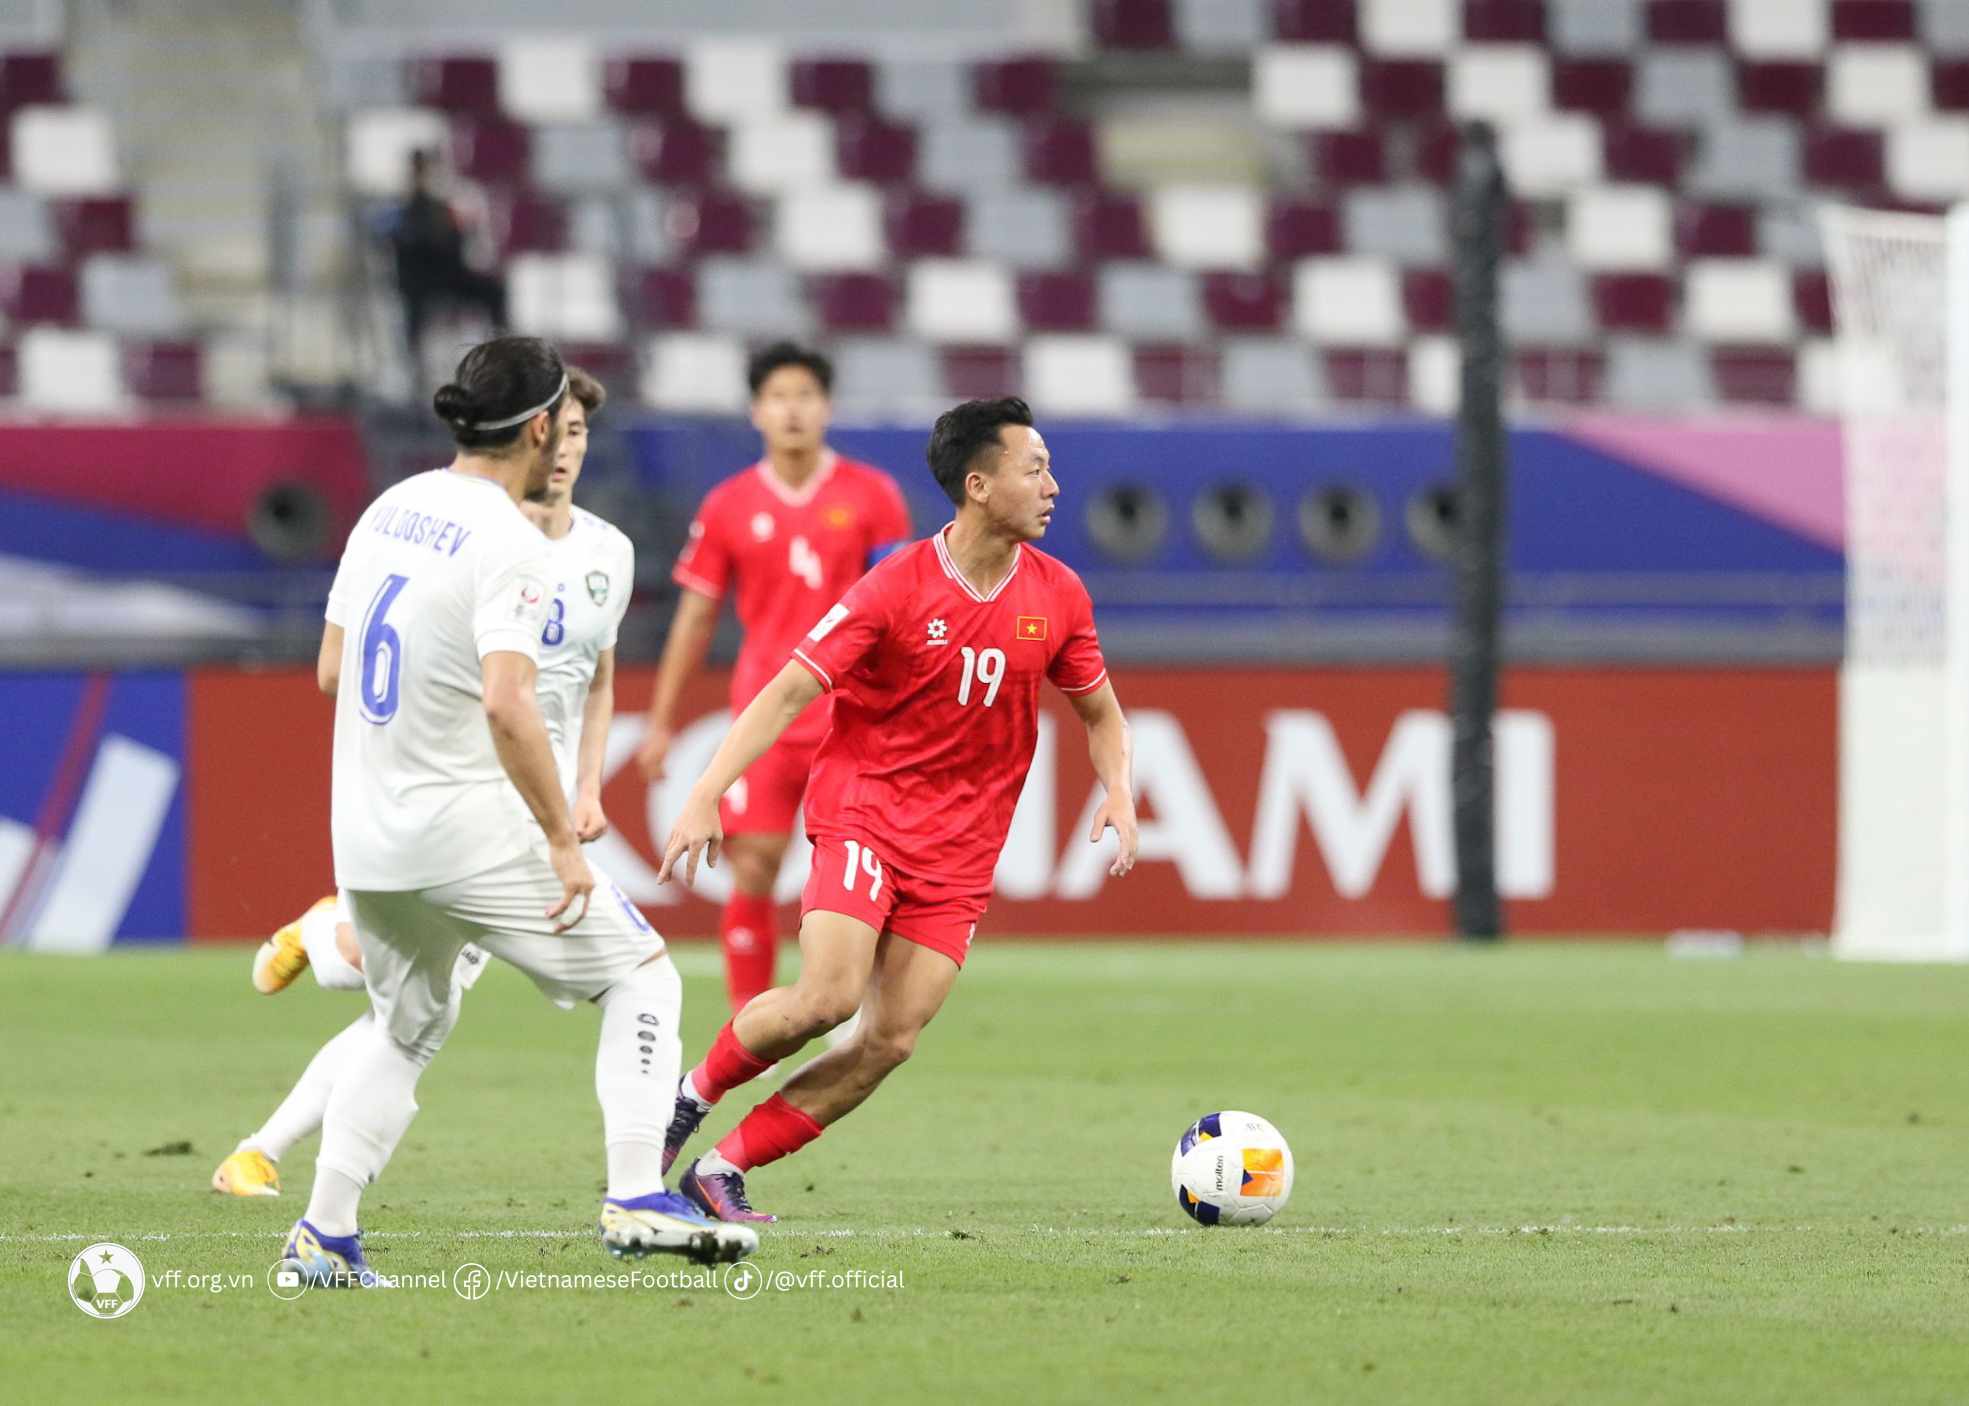 Thái Sơn là một trong những cầu thủ chơi tốt nhất của đội tuyển U.23 Việt Nam